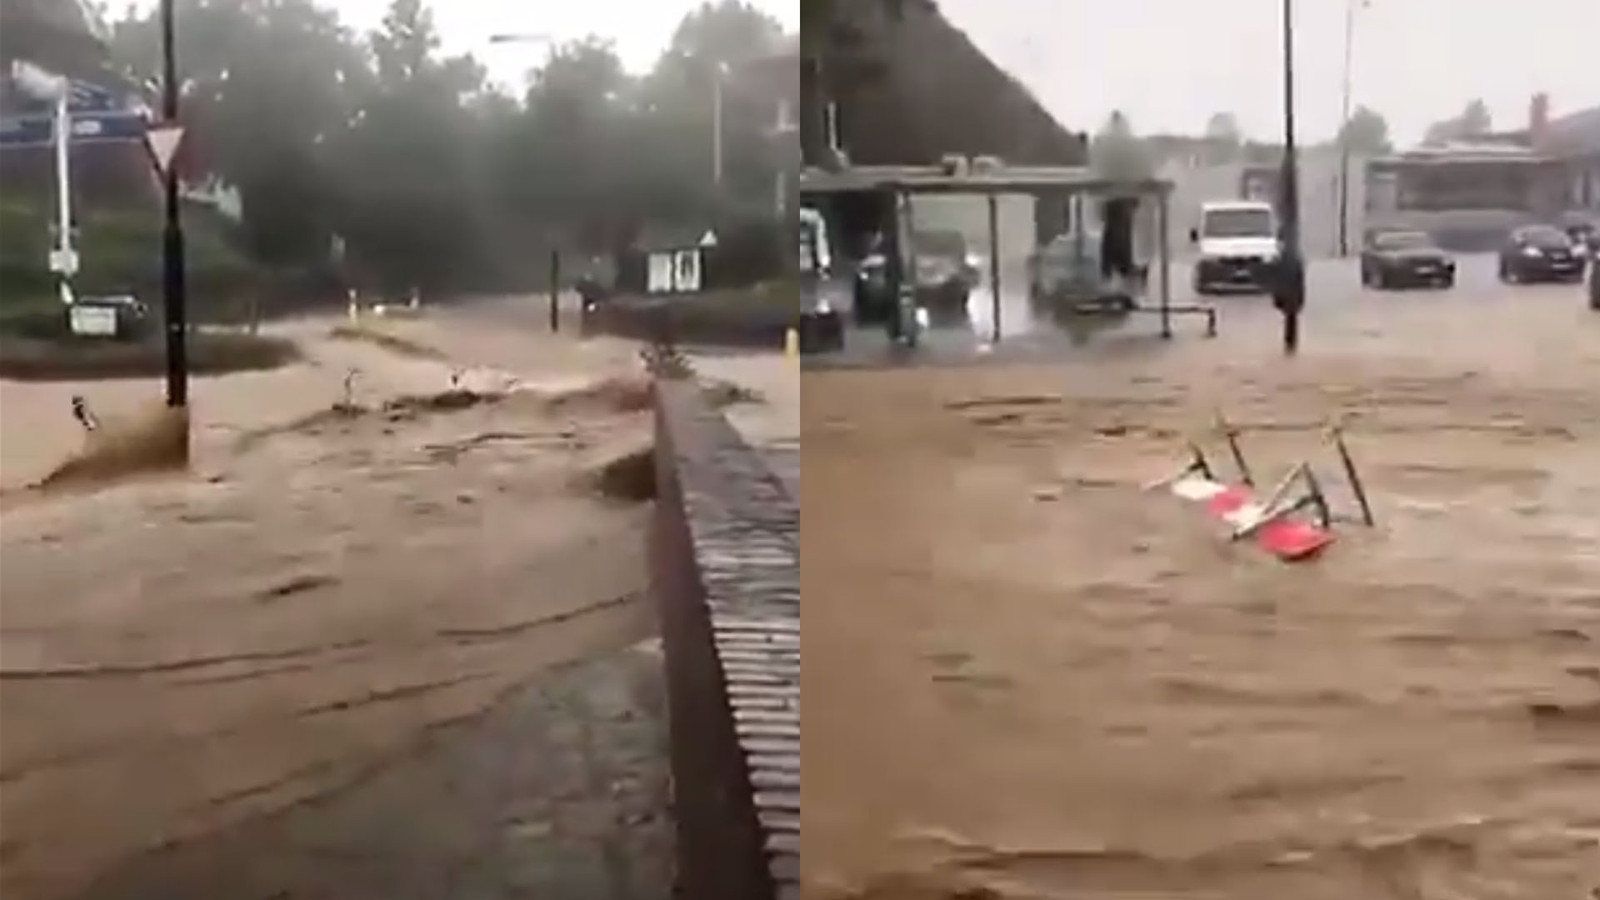 Hevige wateroverlast in Zuid-Limburg: op beelden is te zien hoe hekken en fietsen door de stroom worden meegesleurd.